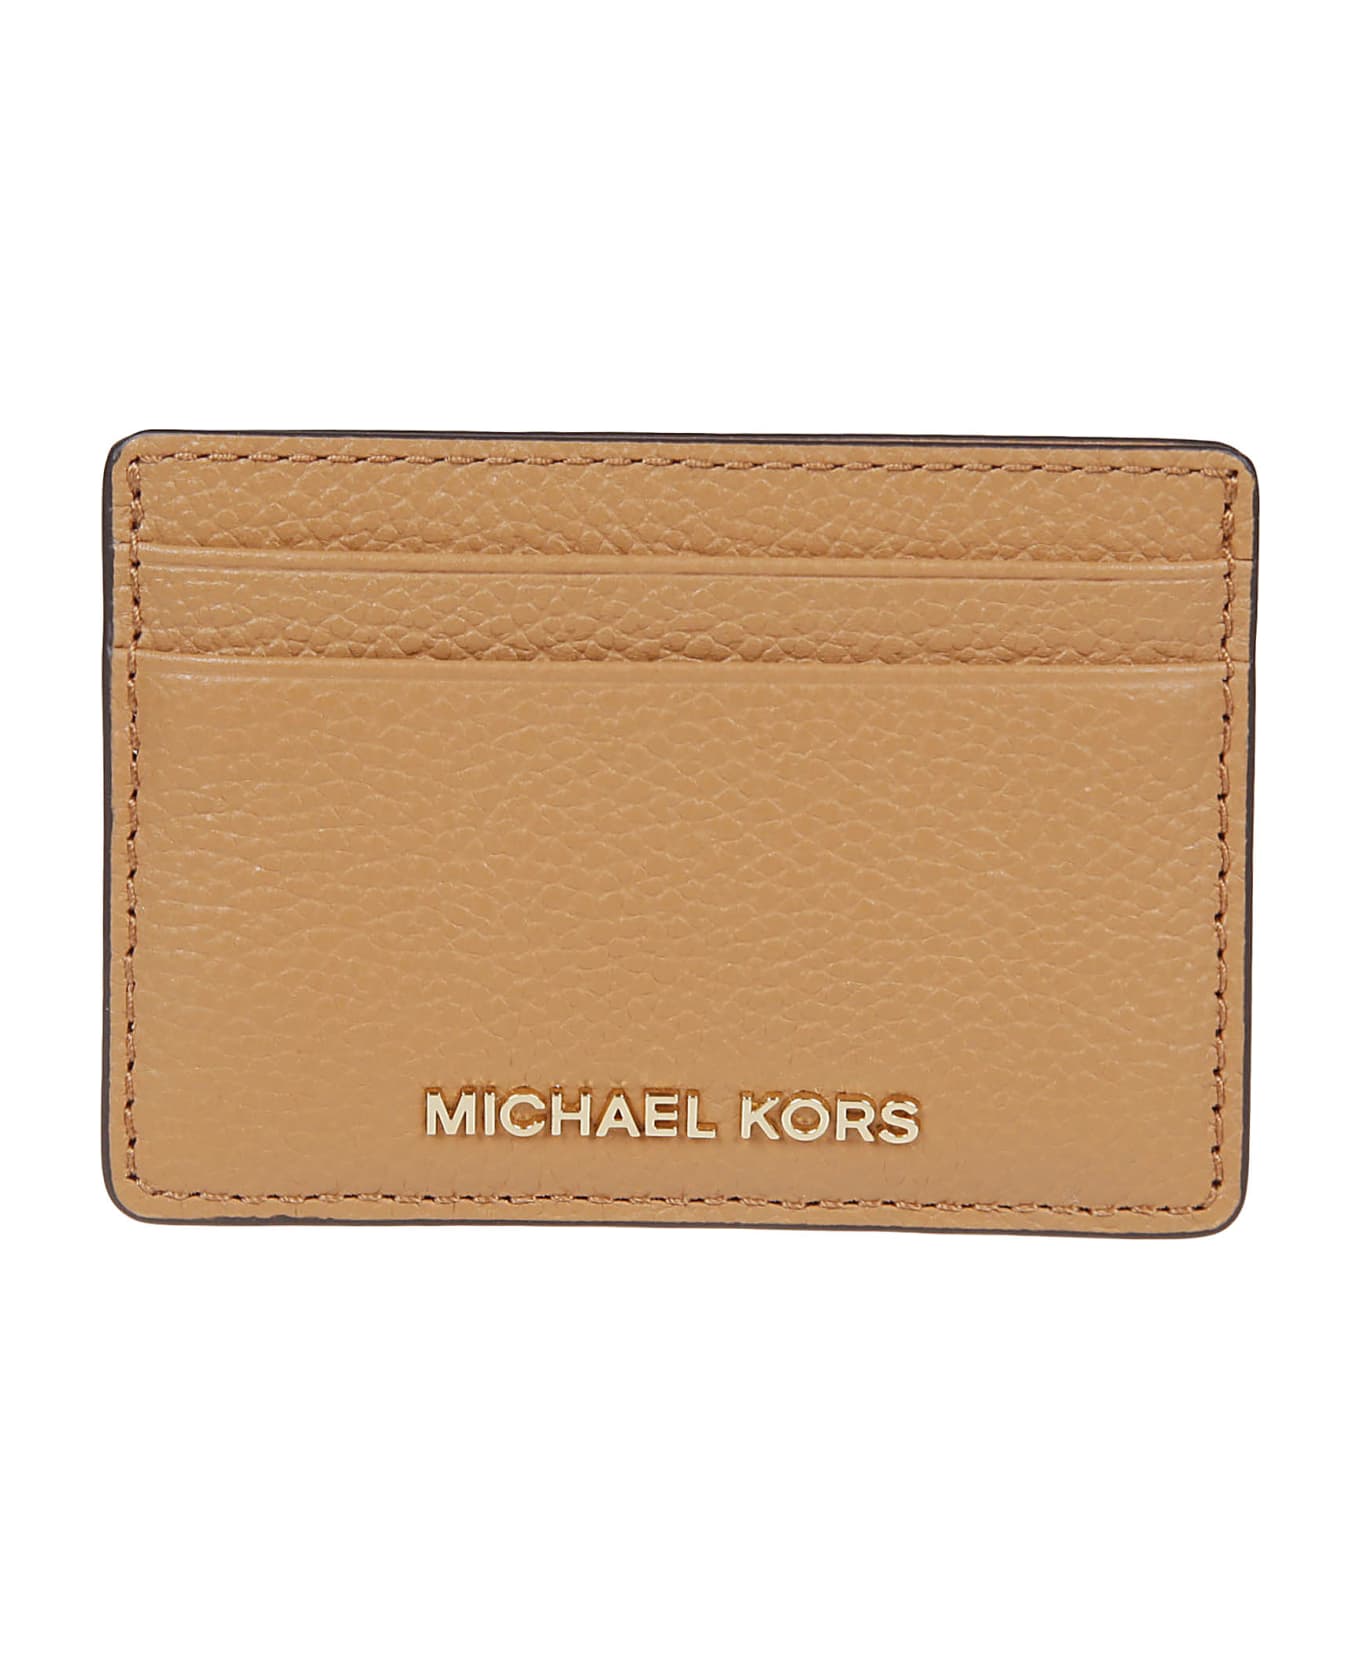 Michael Kors Jet Set Credit Card Holder - Pale Peanut